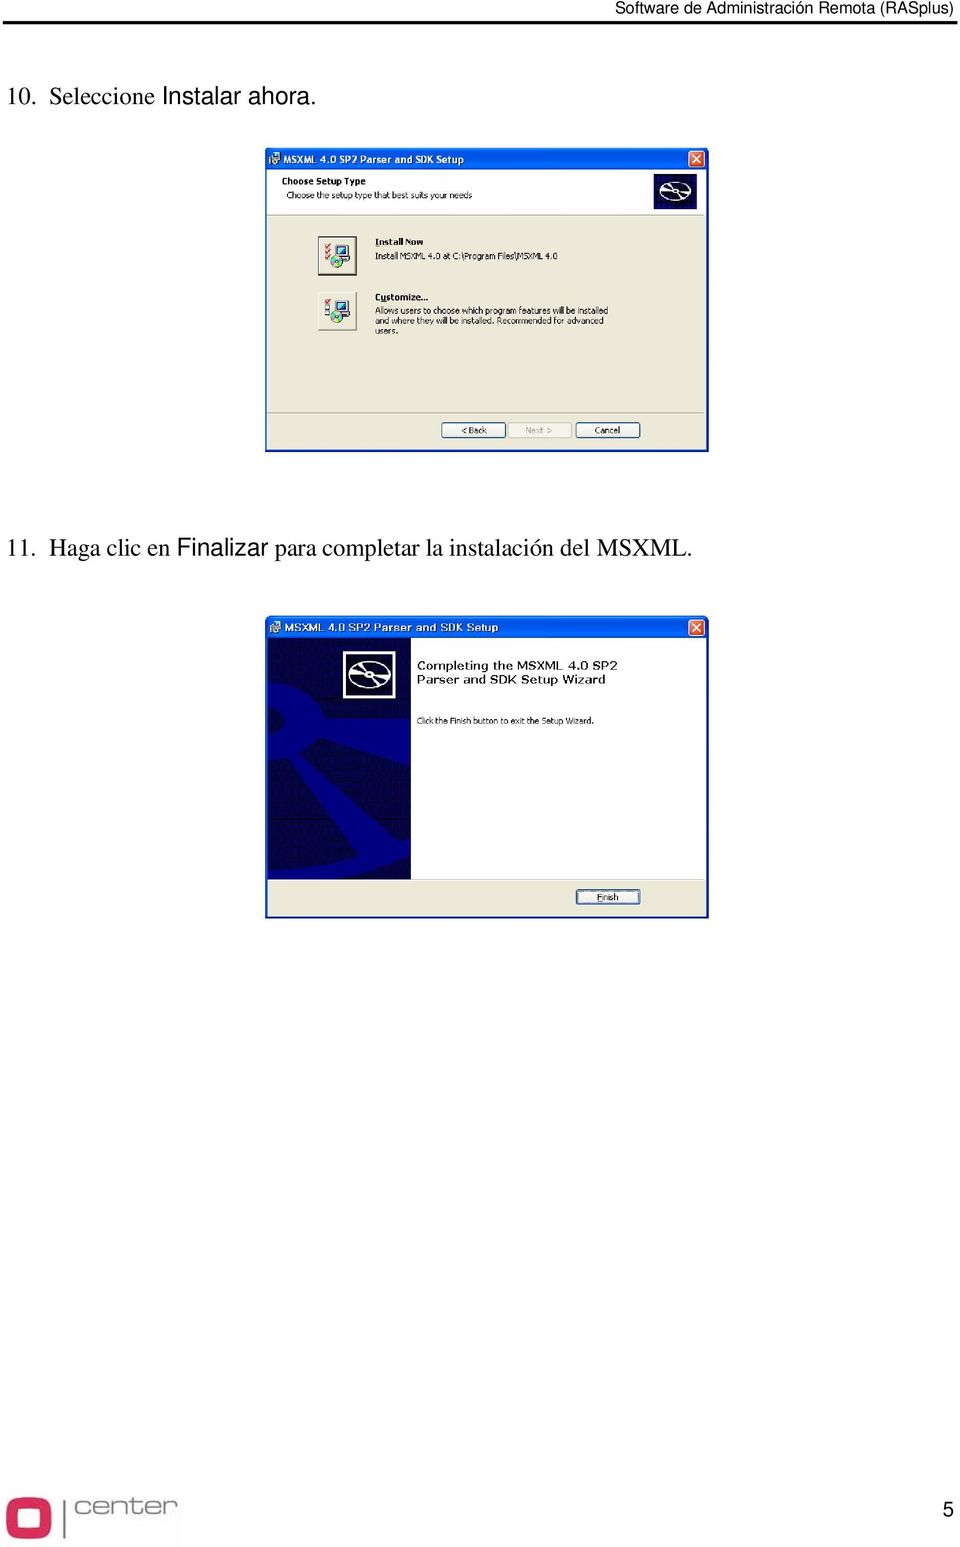 Haga clic en Finalizar para completar la instalación del MSXML.